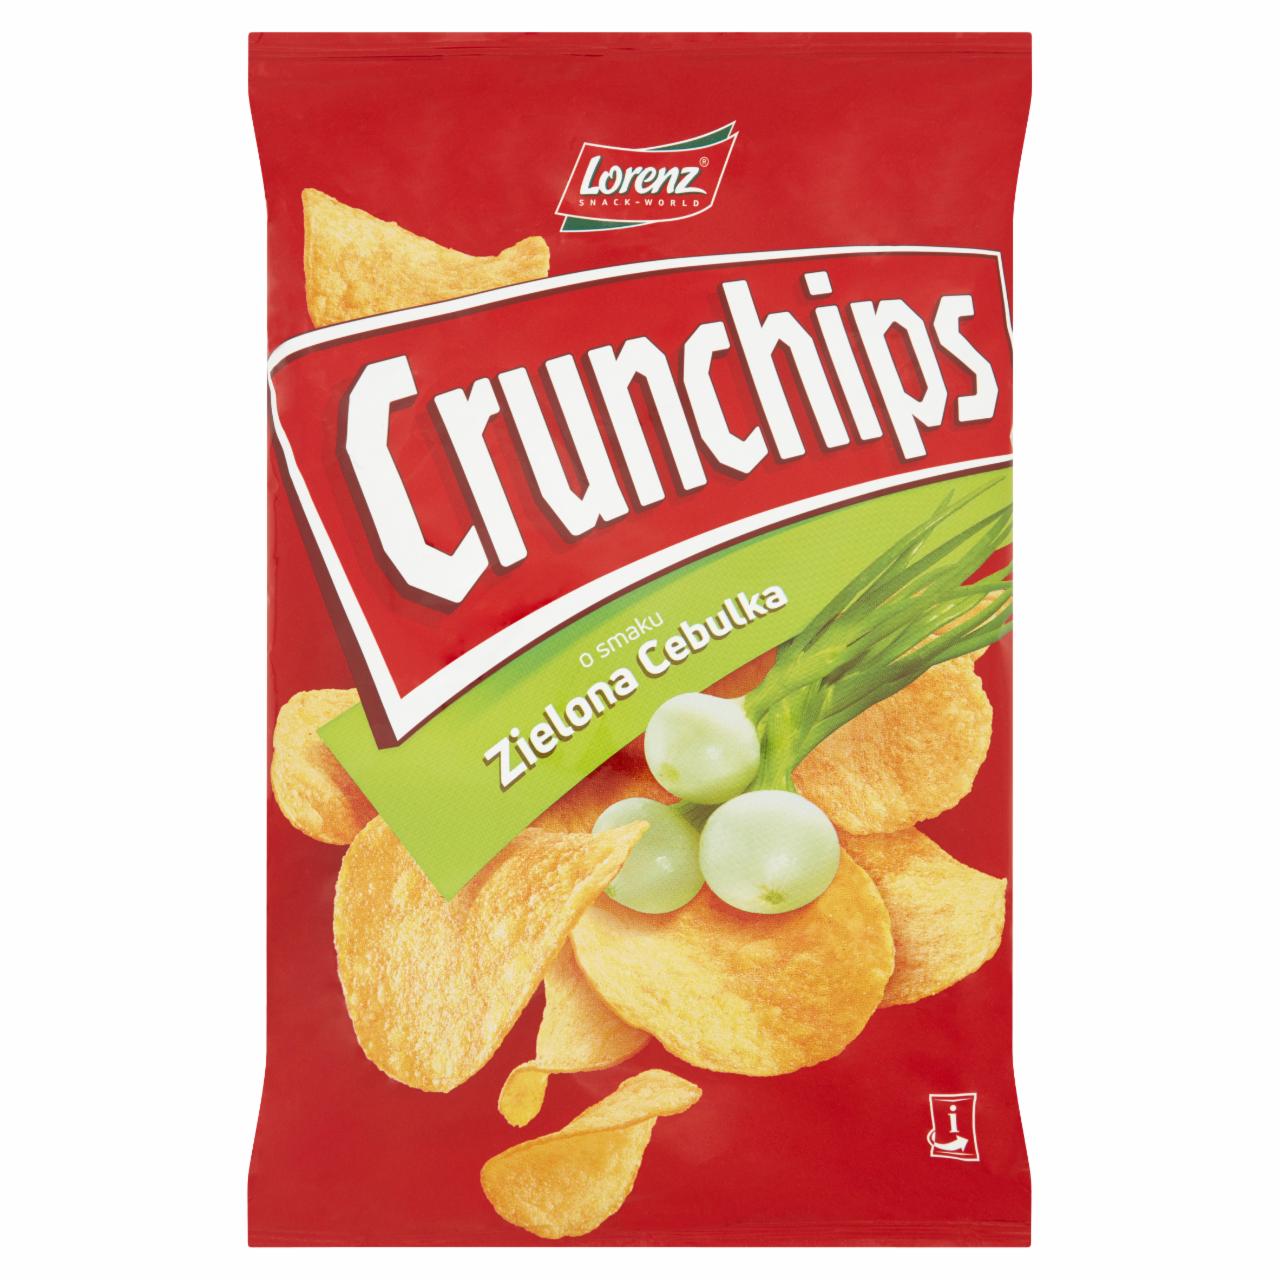 Zdjęcia - Crunchips Chipsy ziemniaczane zielona cebulka 140 g